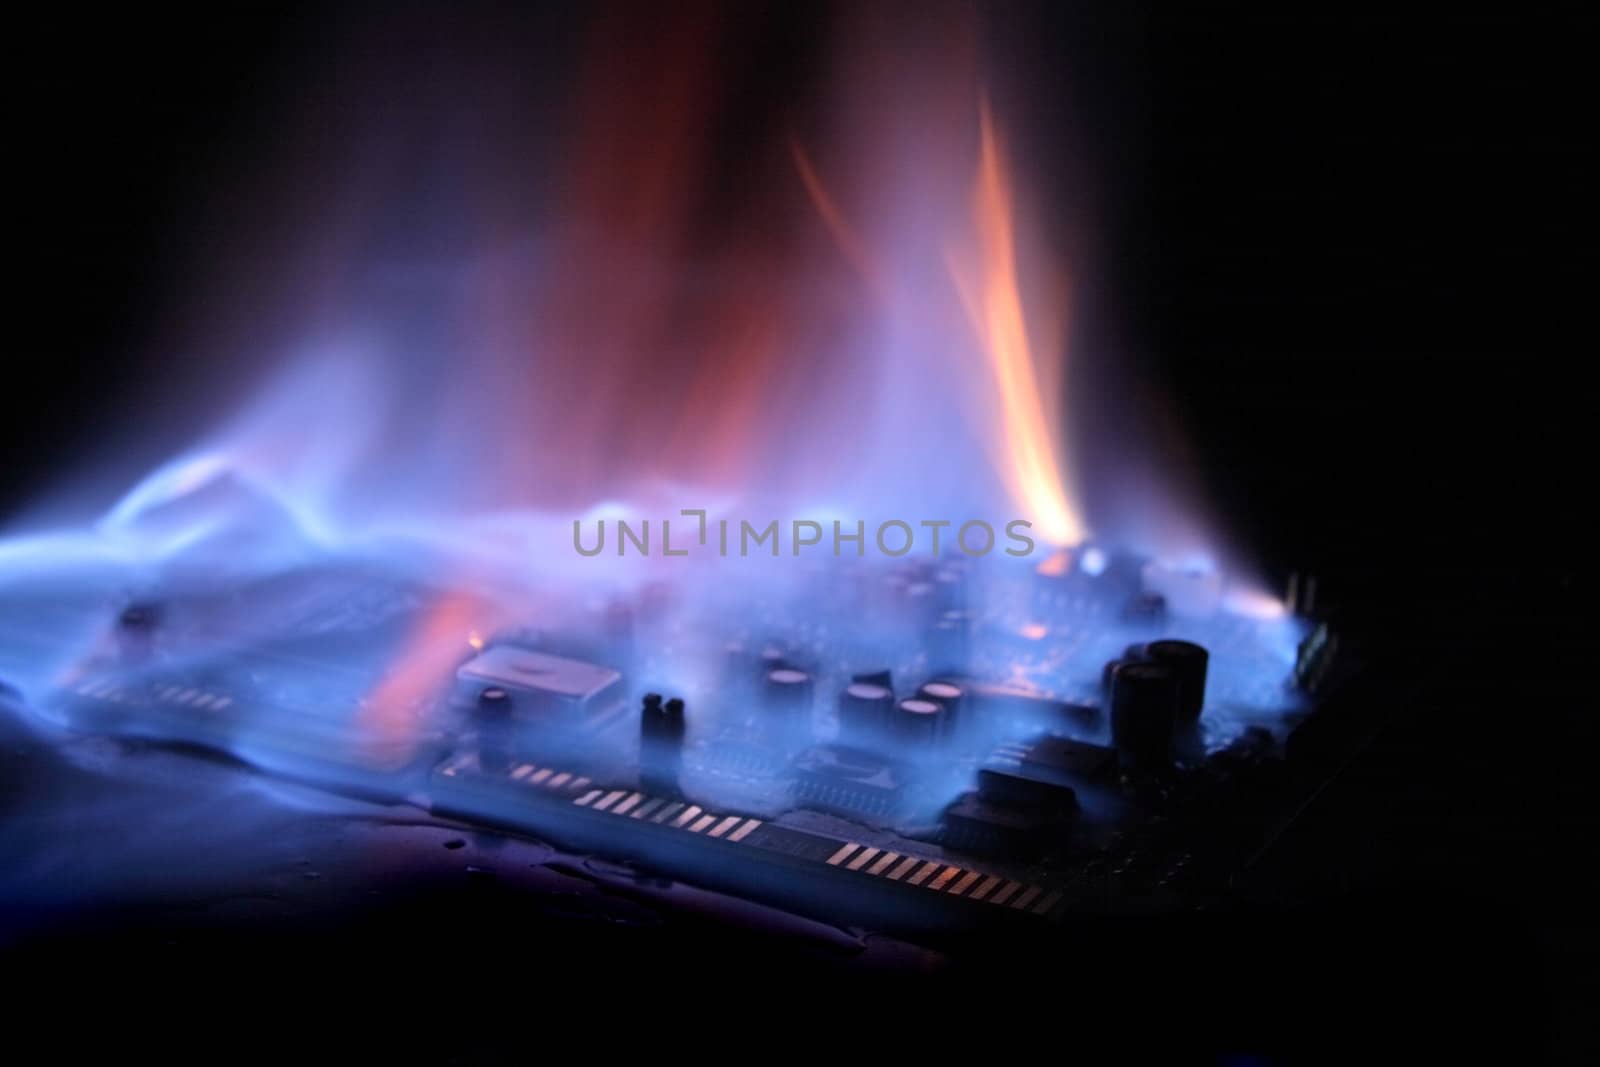 soundcard  in the fire by jonnysek